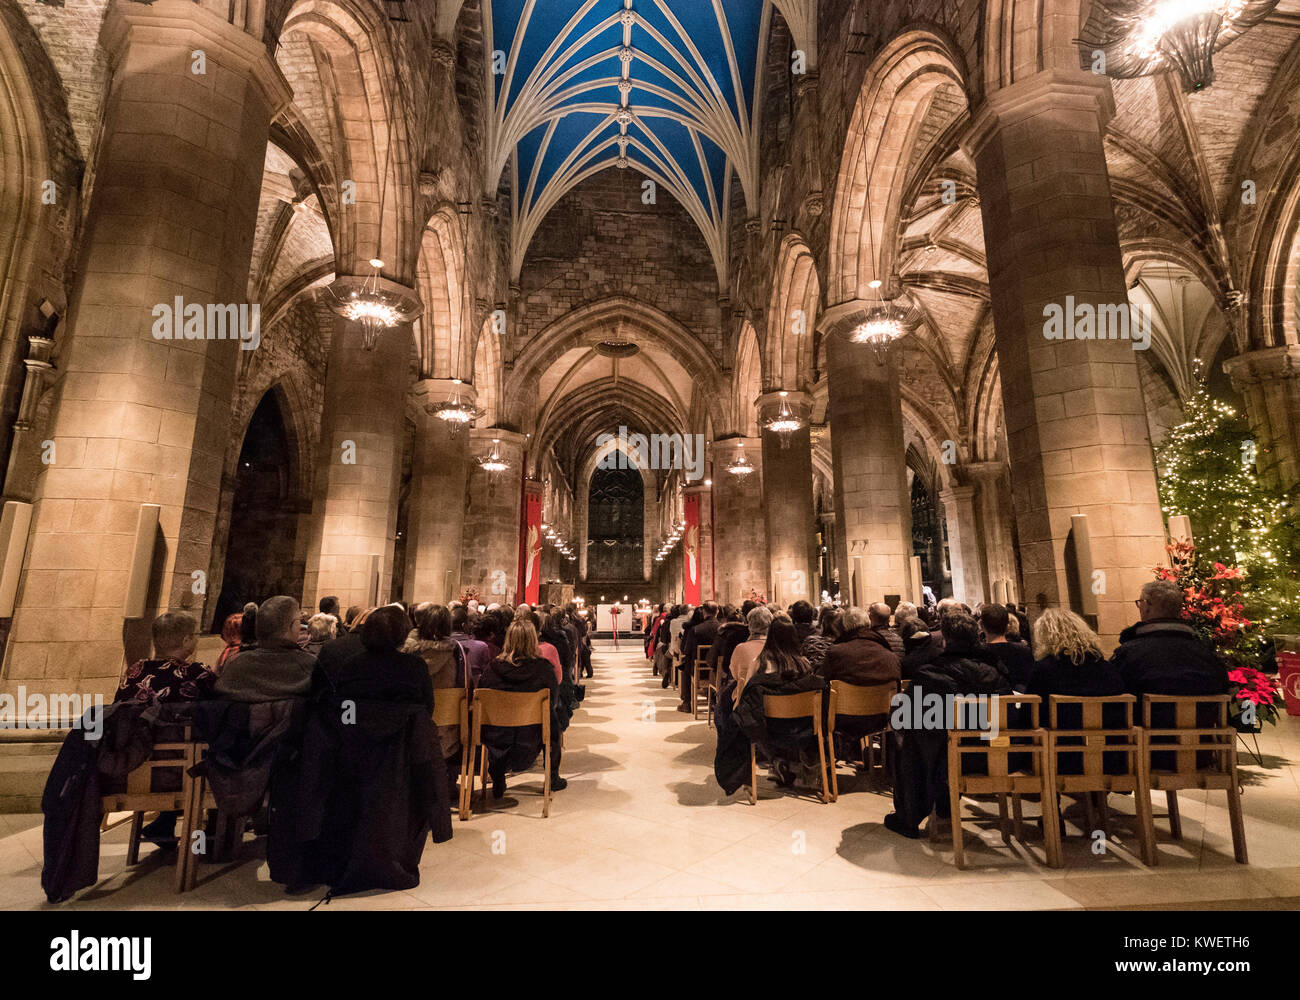 Interior de la Catedral de St Giles durante el concierto de villancicos navideños como parte de Edinburgh's Hogmanay celebraciones en la víspera de Año Nuevo en Edimburgo, Escocia, u Foto de stock